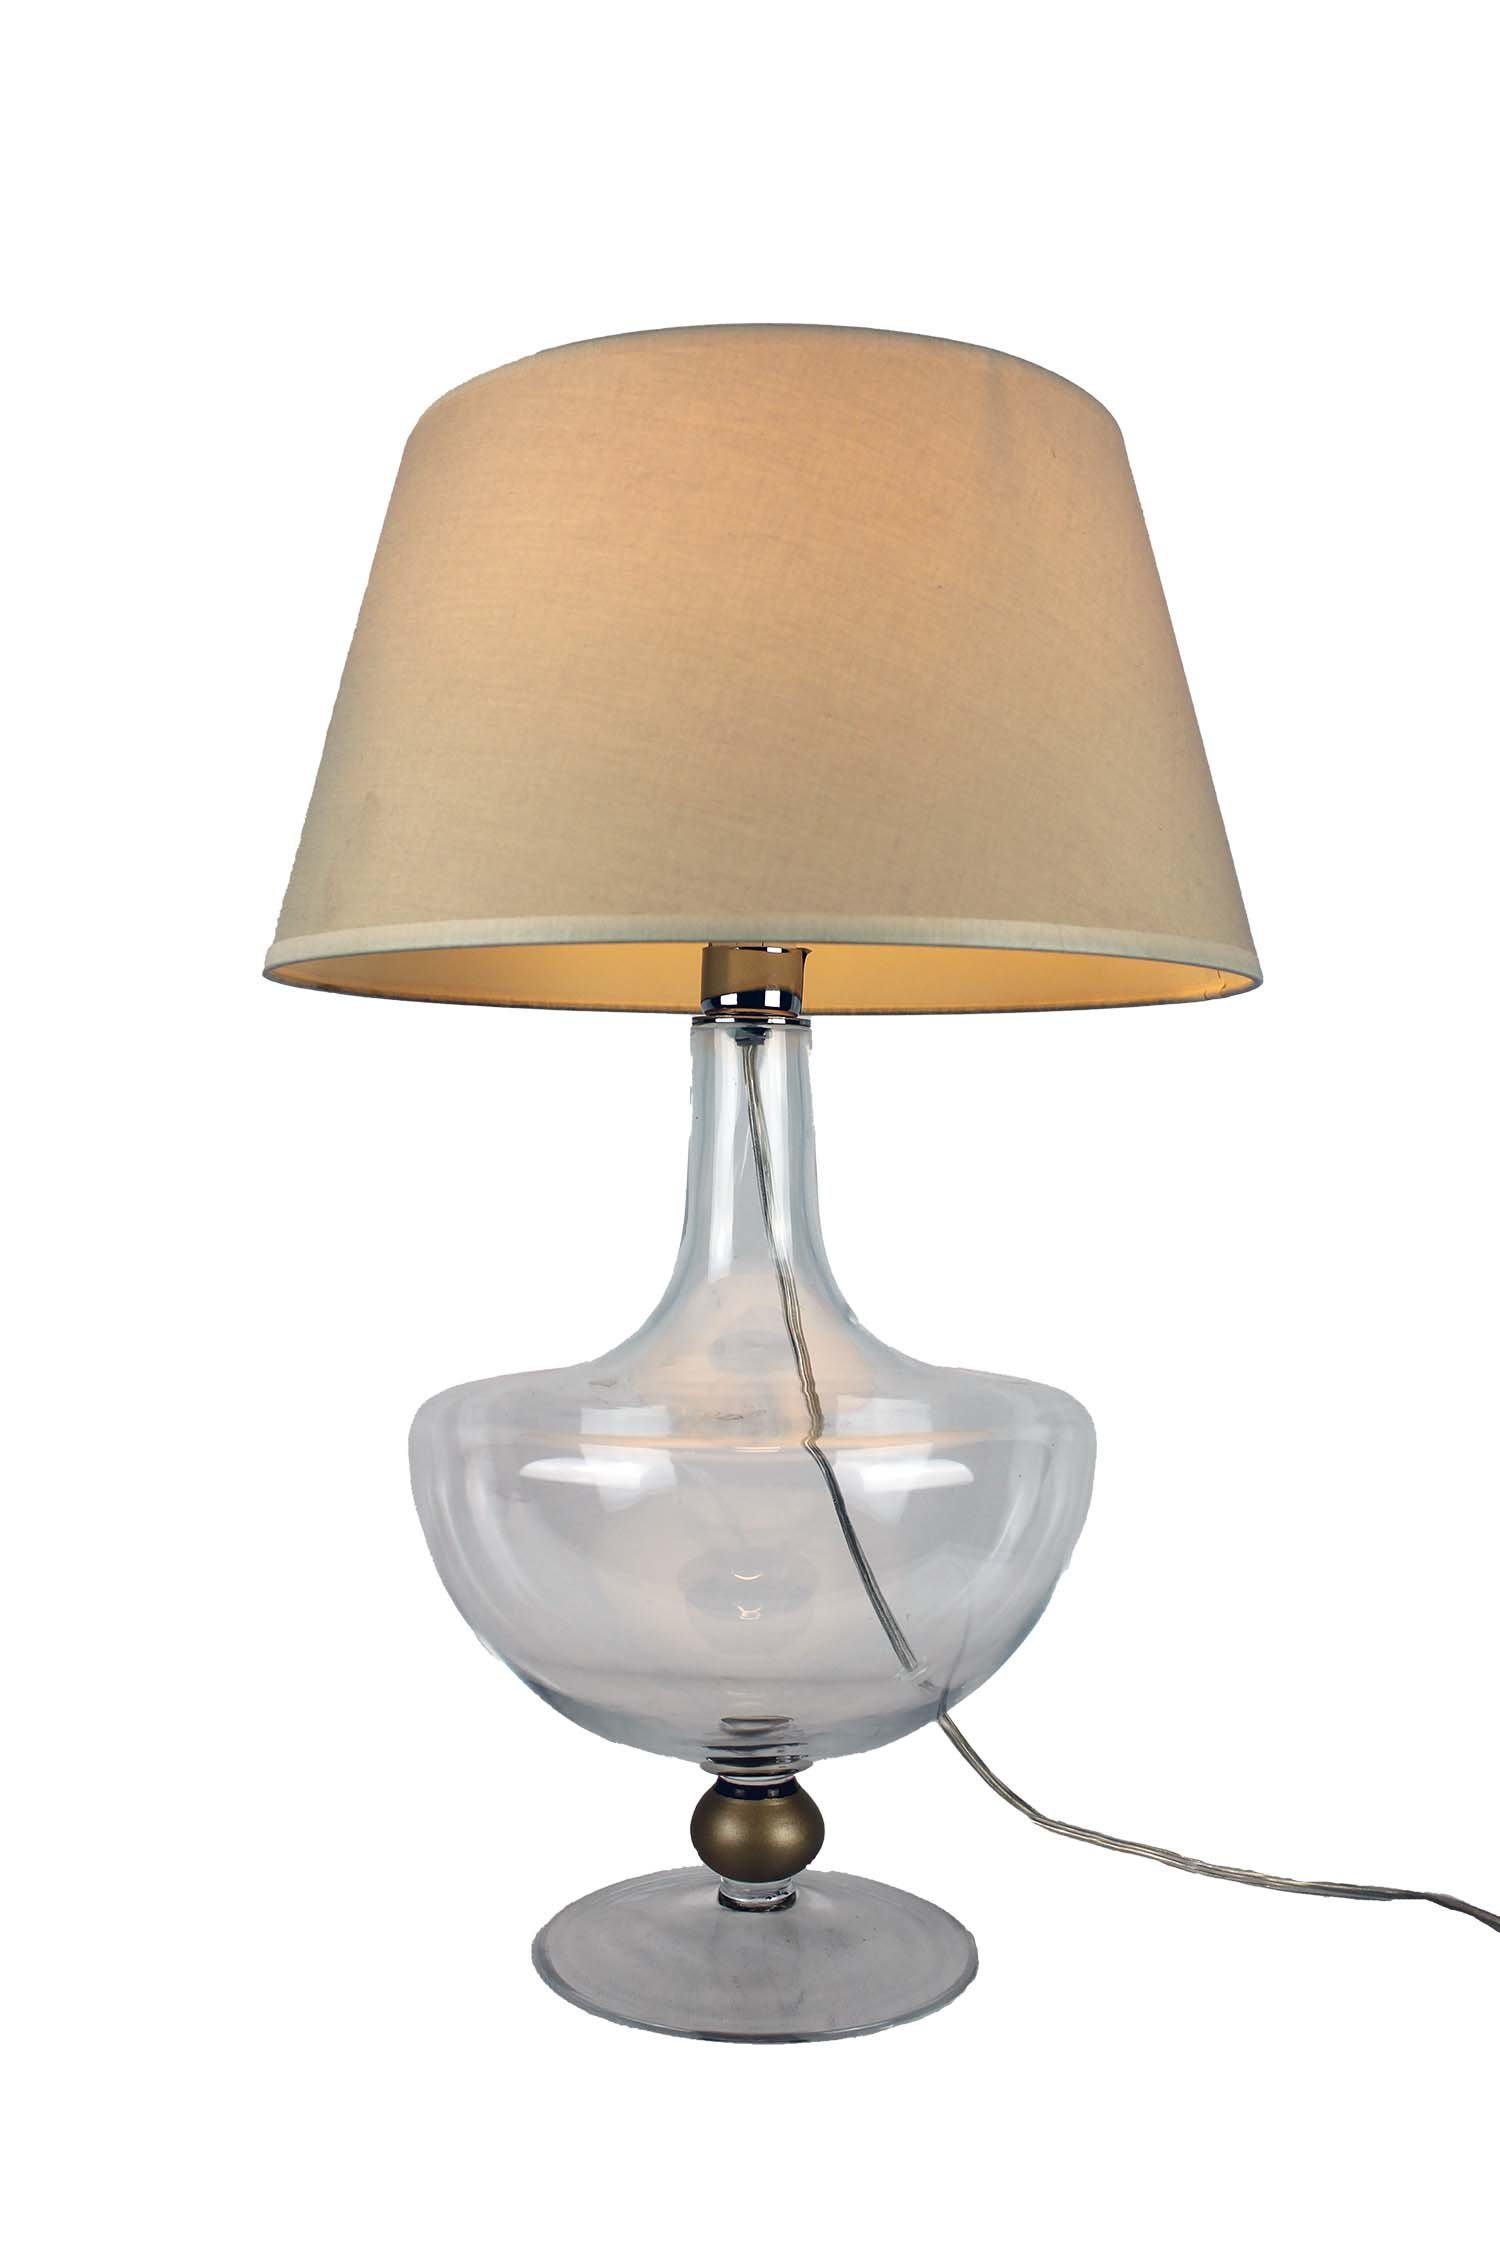 Signature Home Collection Nachttischlampe mit Stil warmweiß, Glaslampe klassischen Leuchtmittel, Glaslampe ohne Lampenschirm, klassisch im klar bauchig